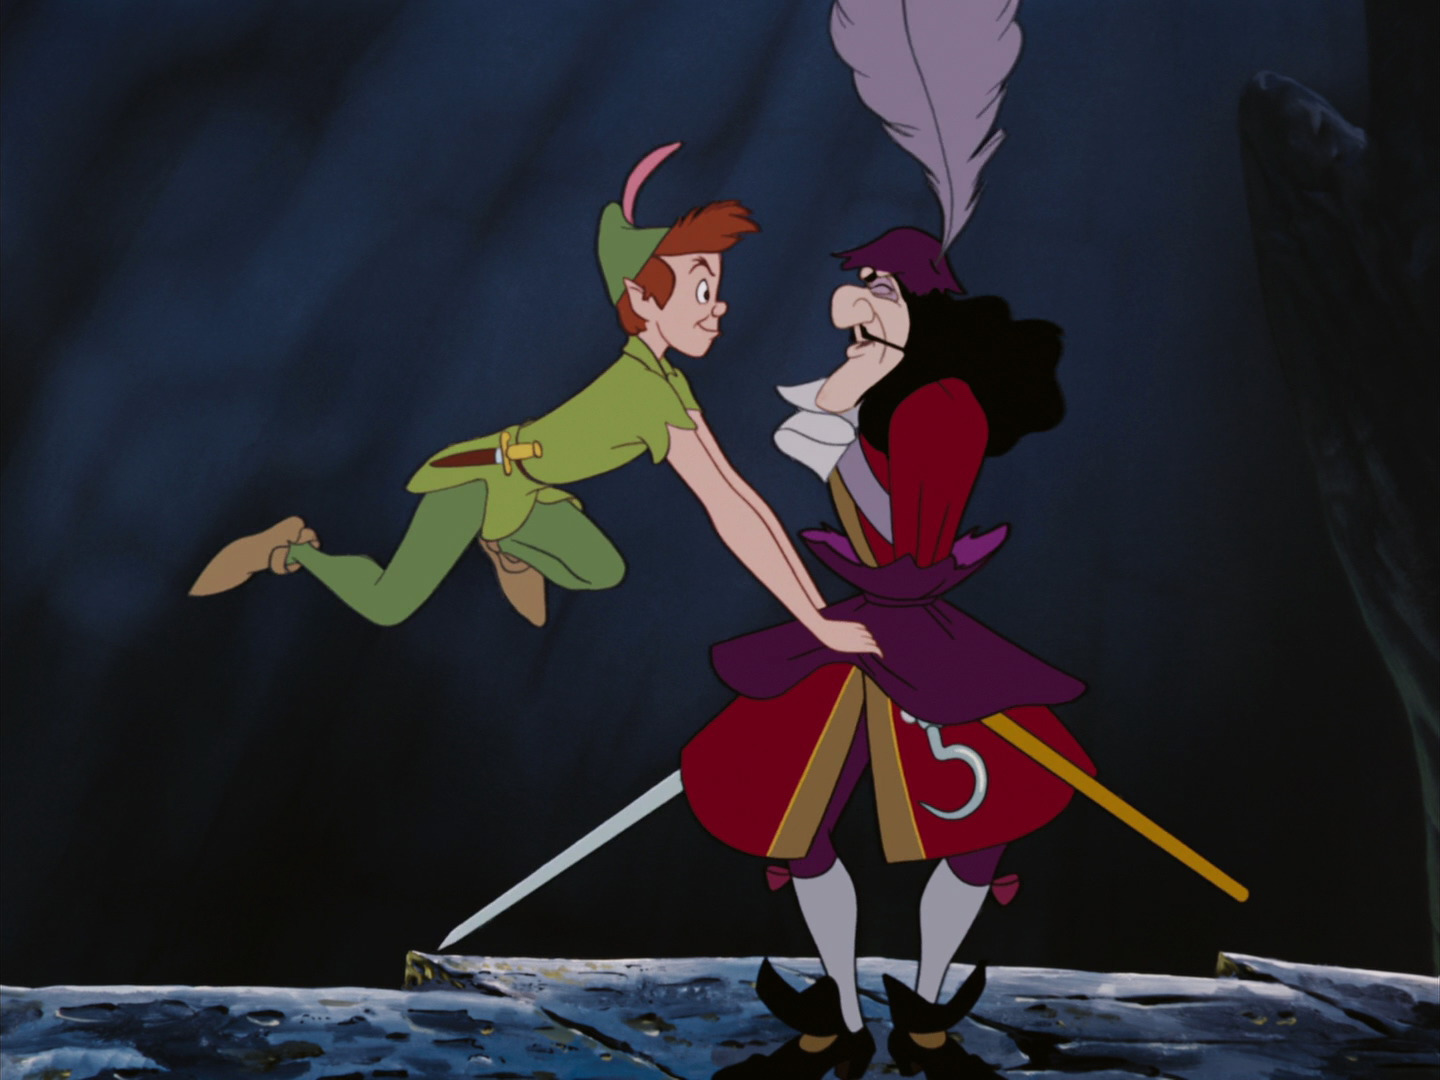  Datos curiosos sobre la versión de Disney de Peter Pan